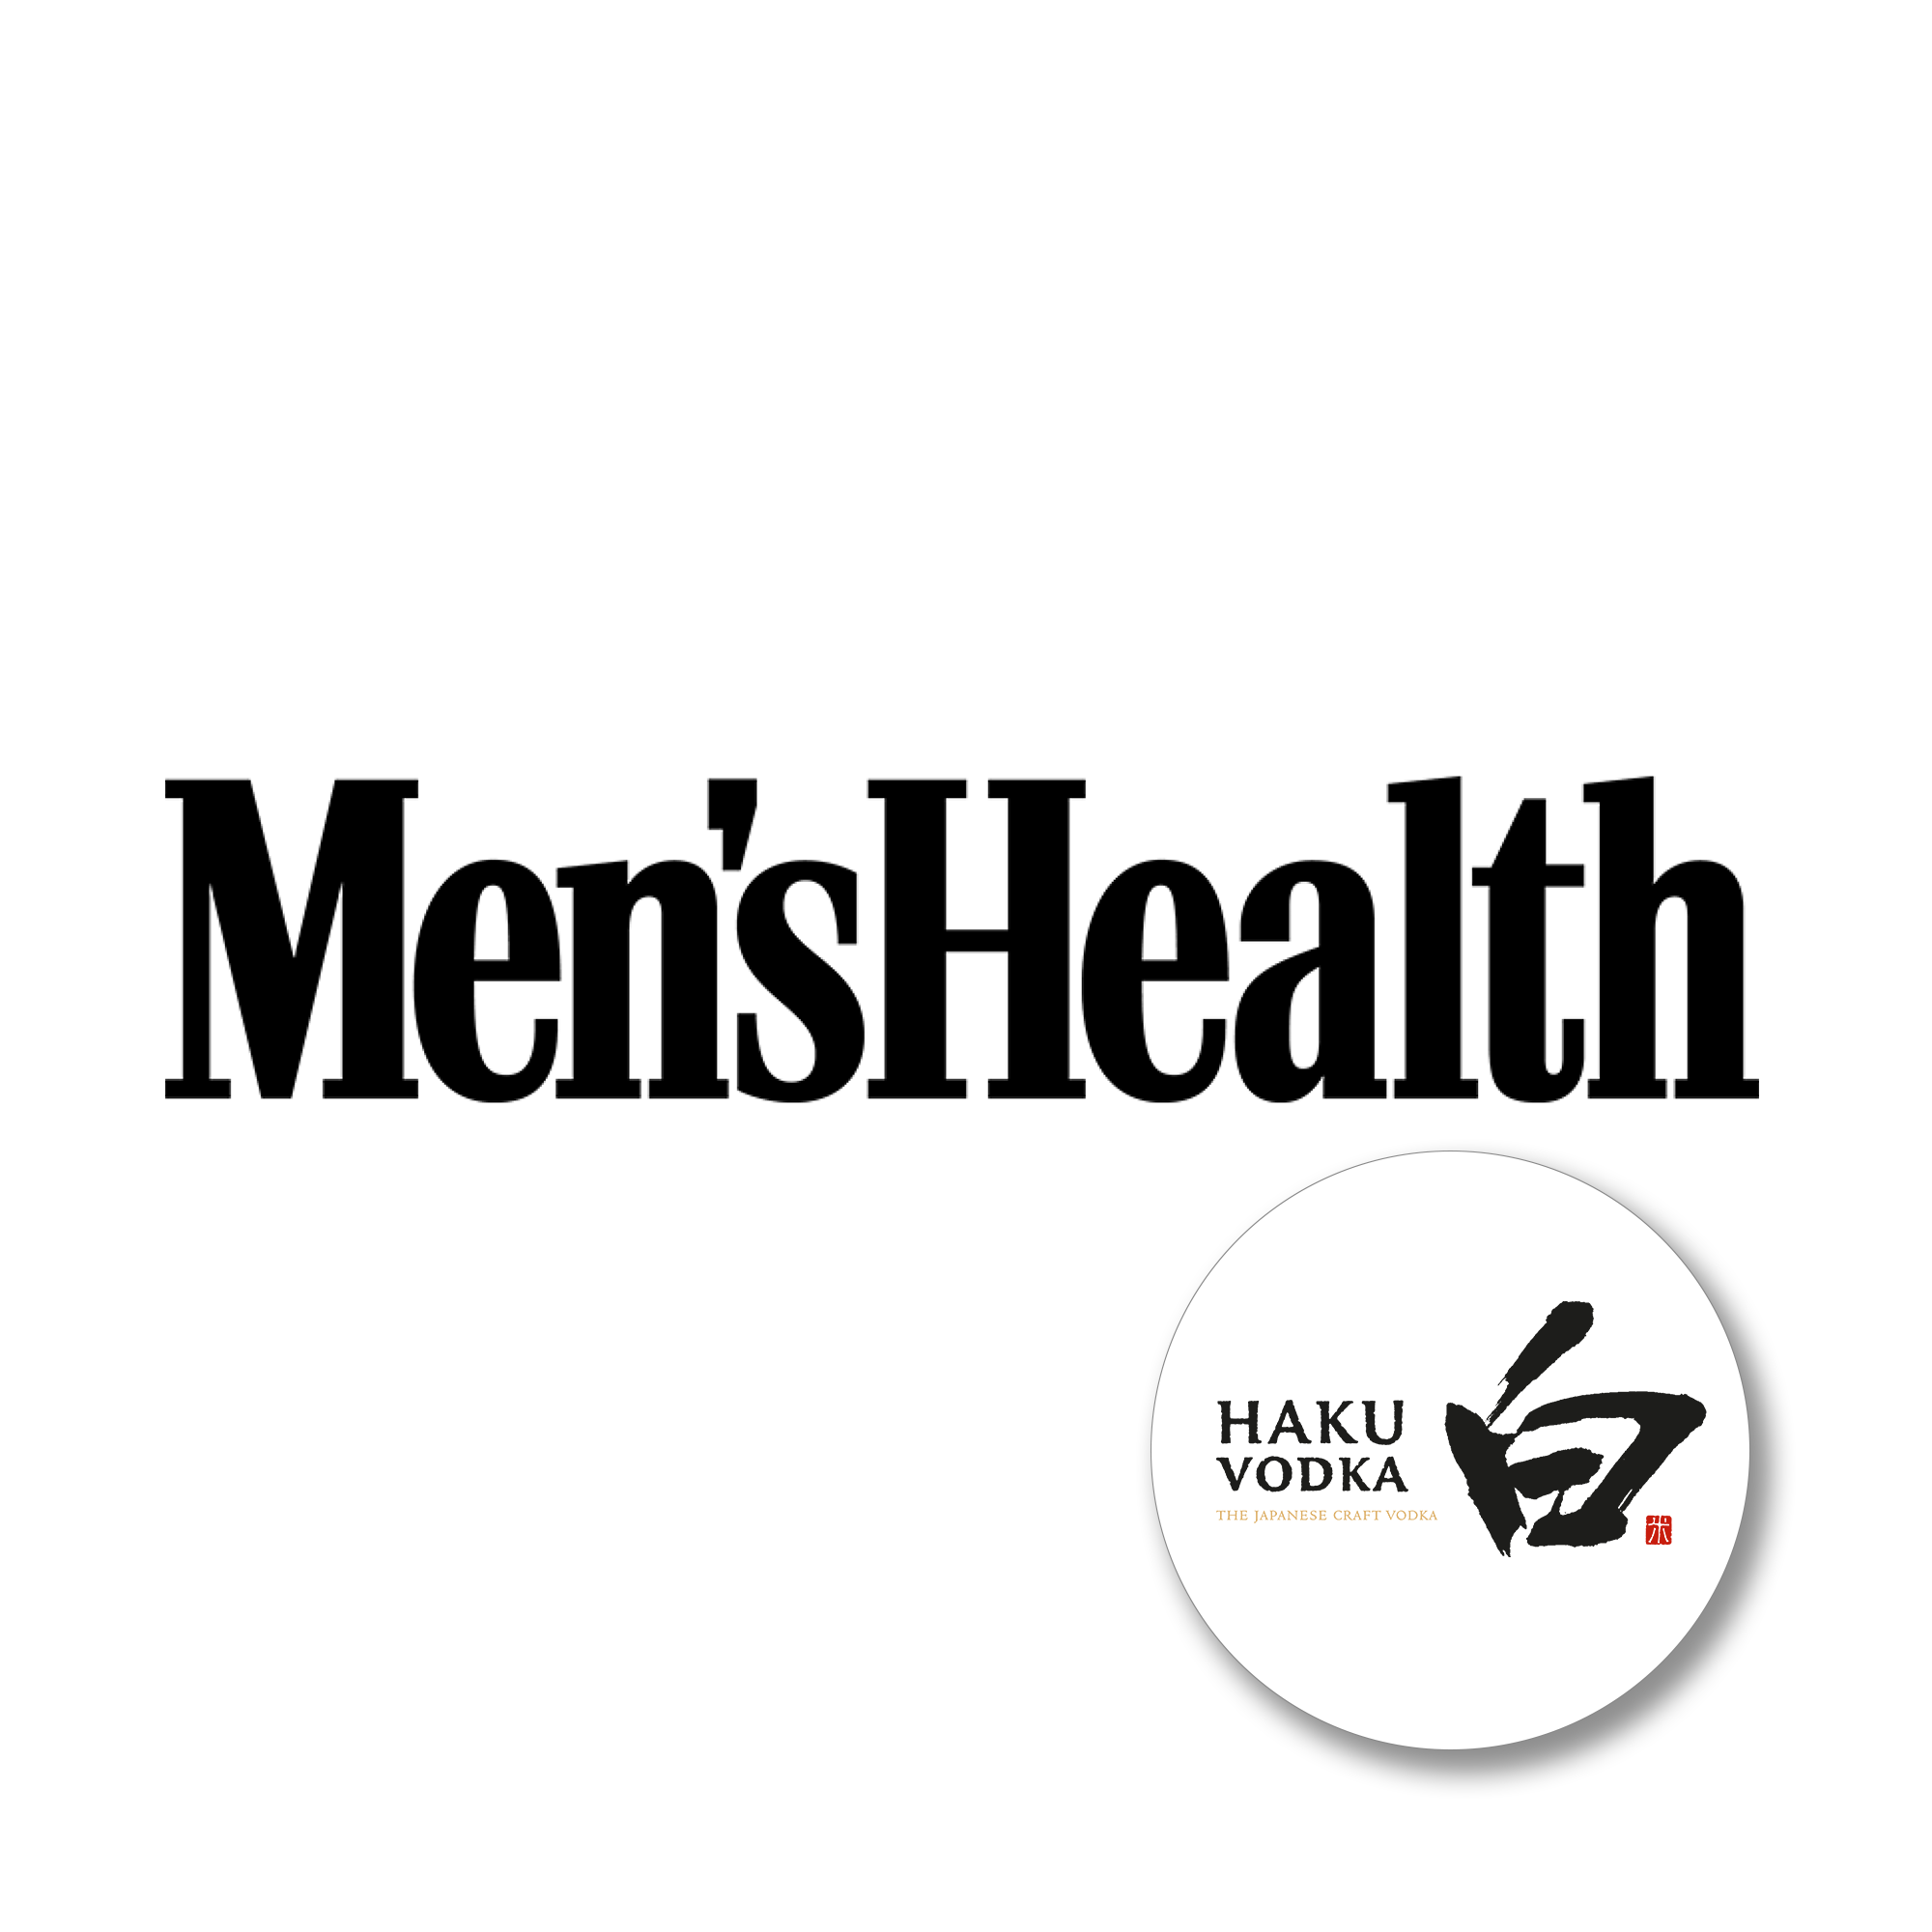 Savona-Press-Logos-MensHealth-Haku.png